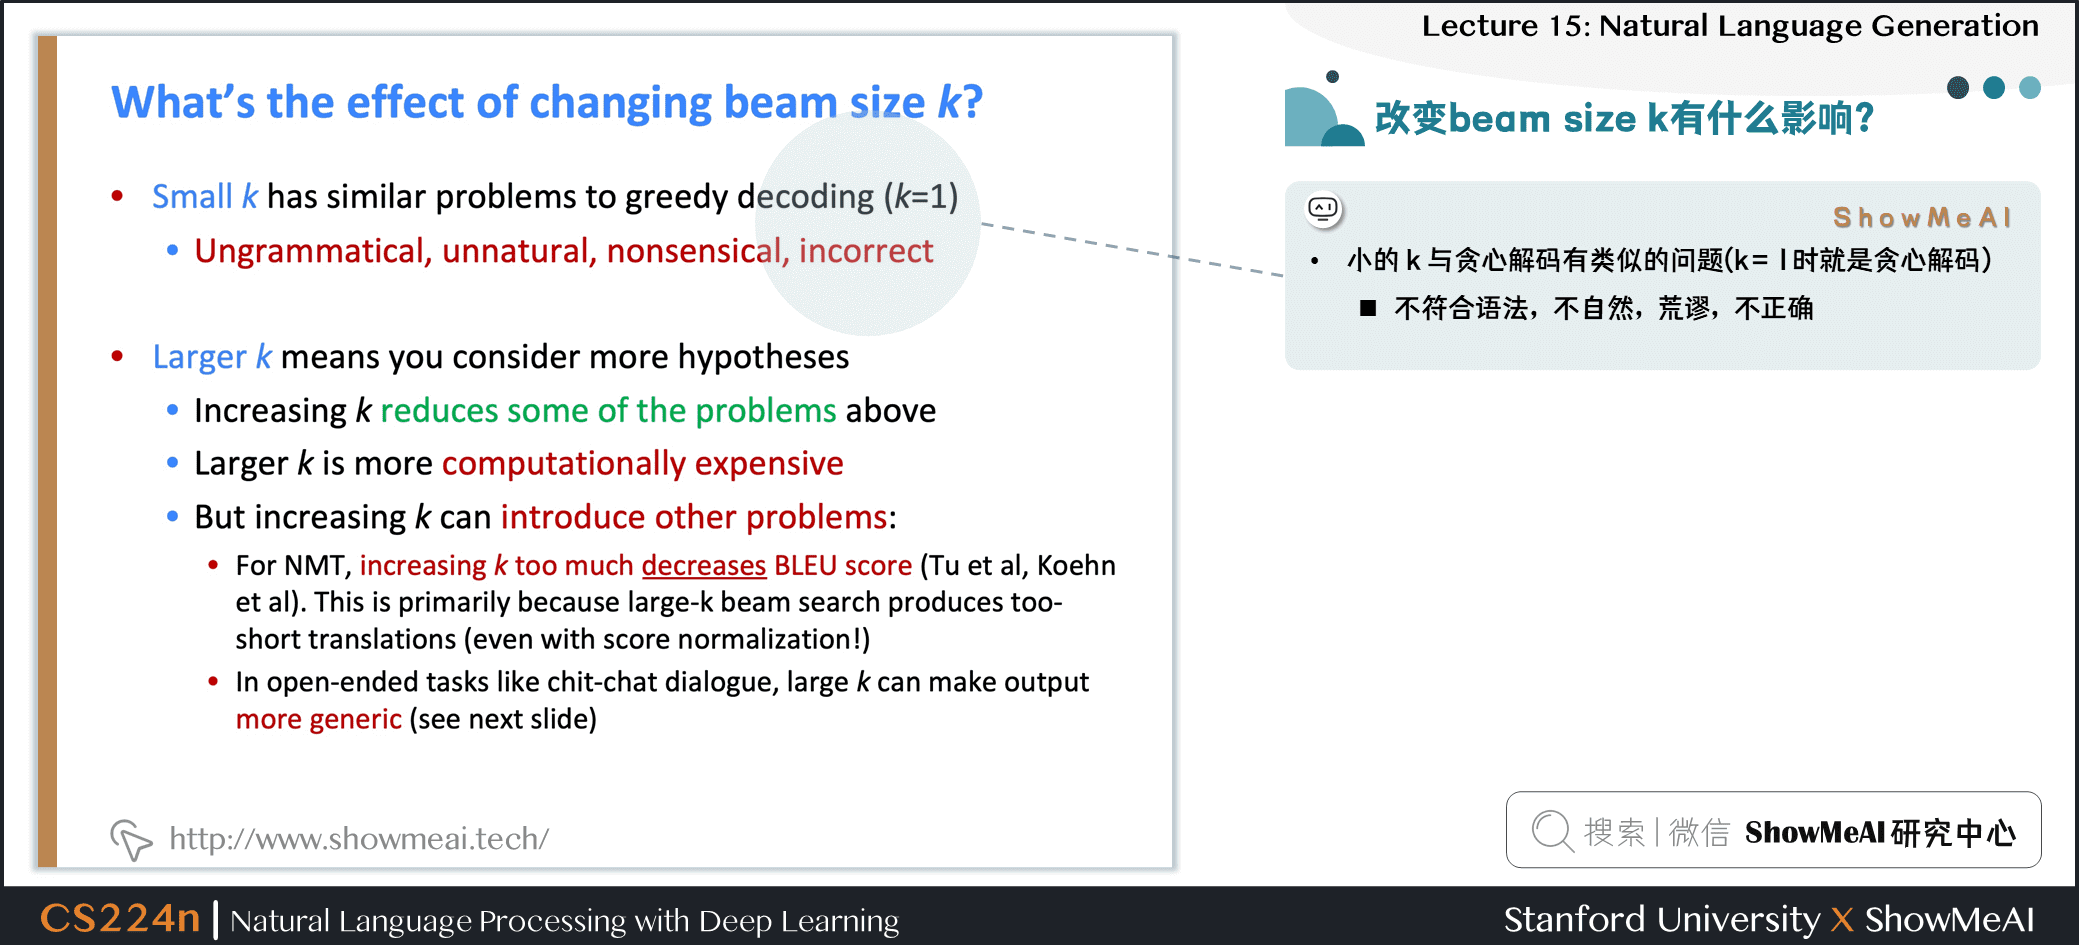 改变集束搜索beam size k有什么影响？